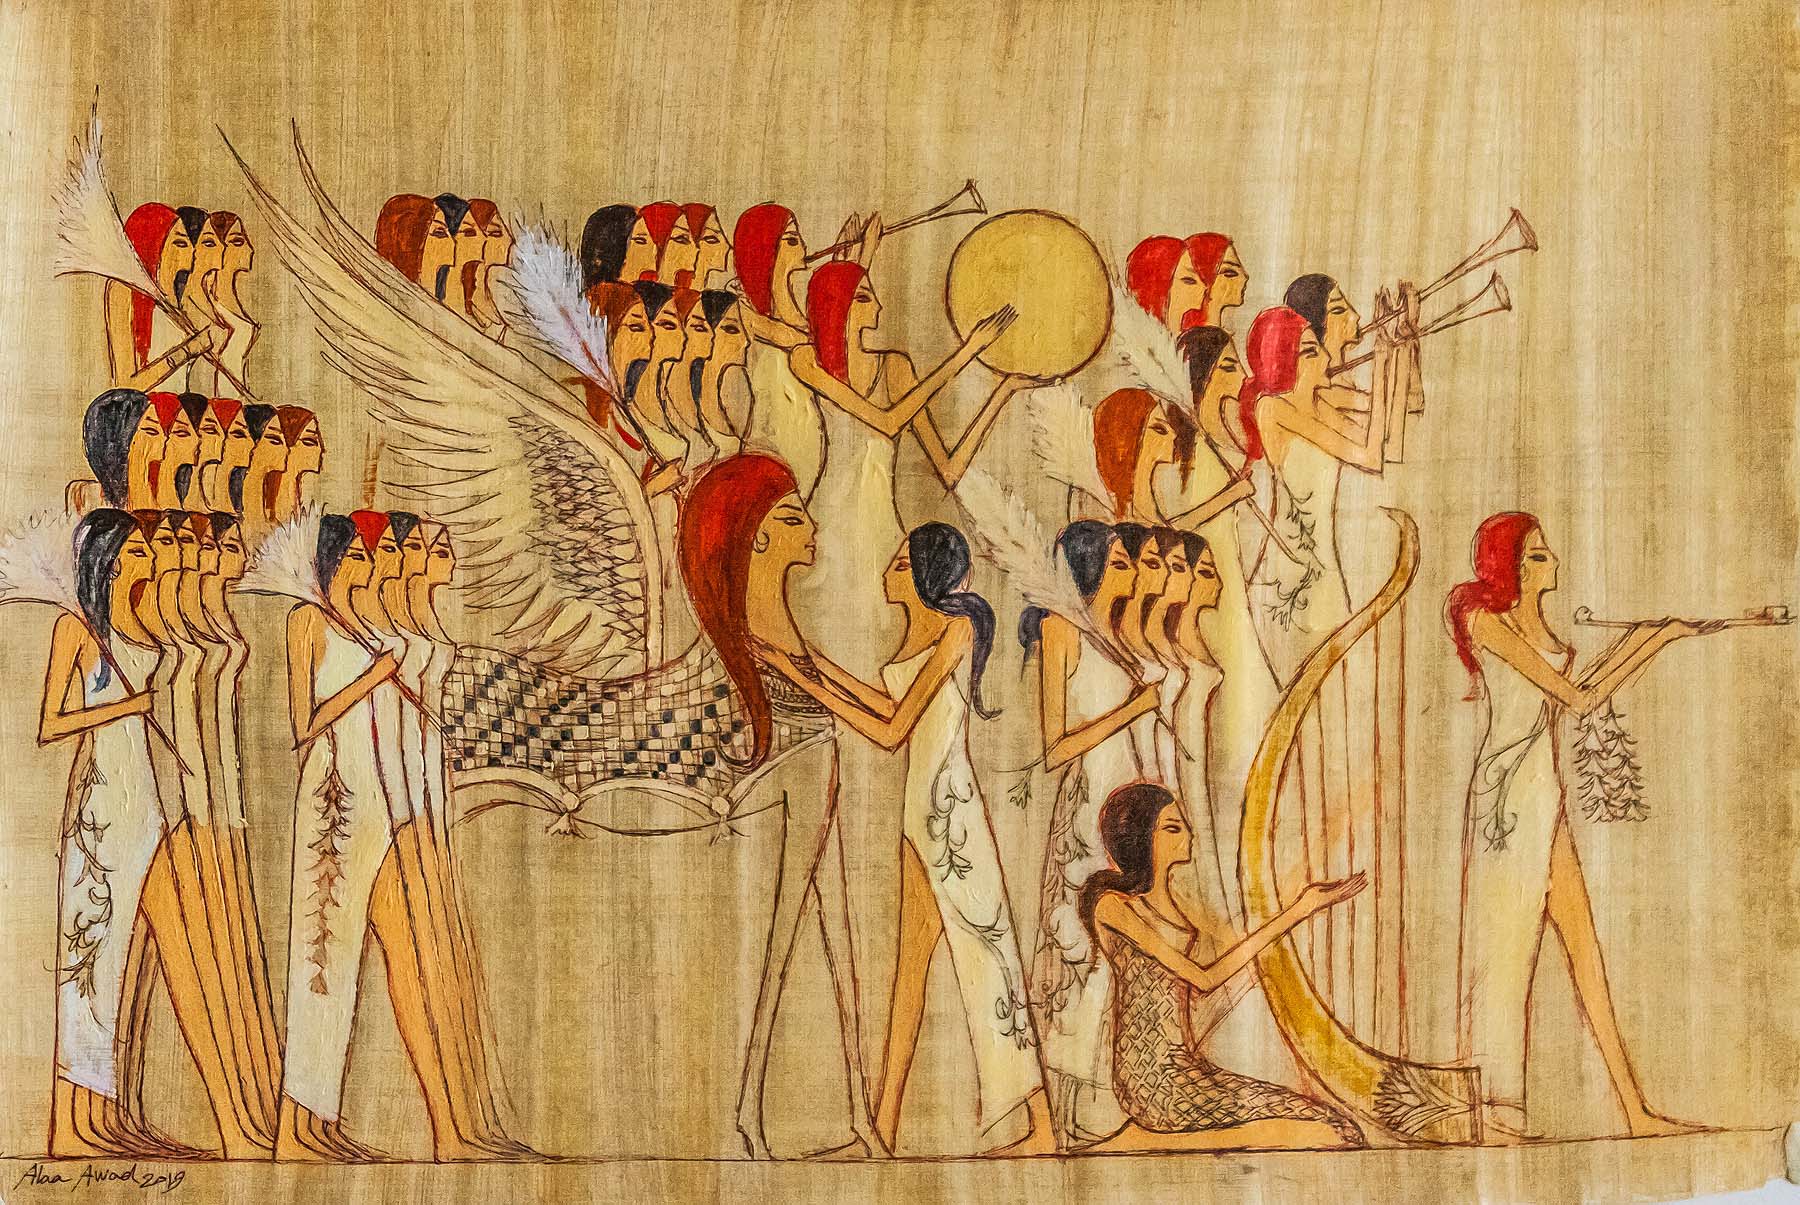 alaa awad - the artist - علاء عوض - painting on Papyrus